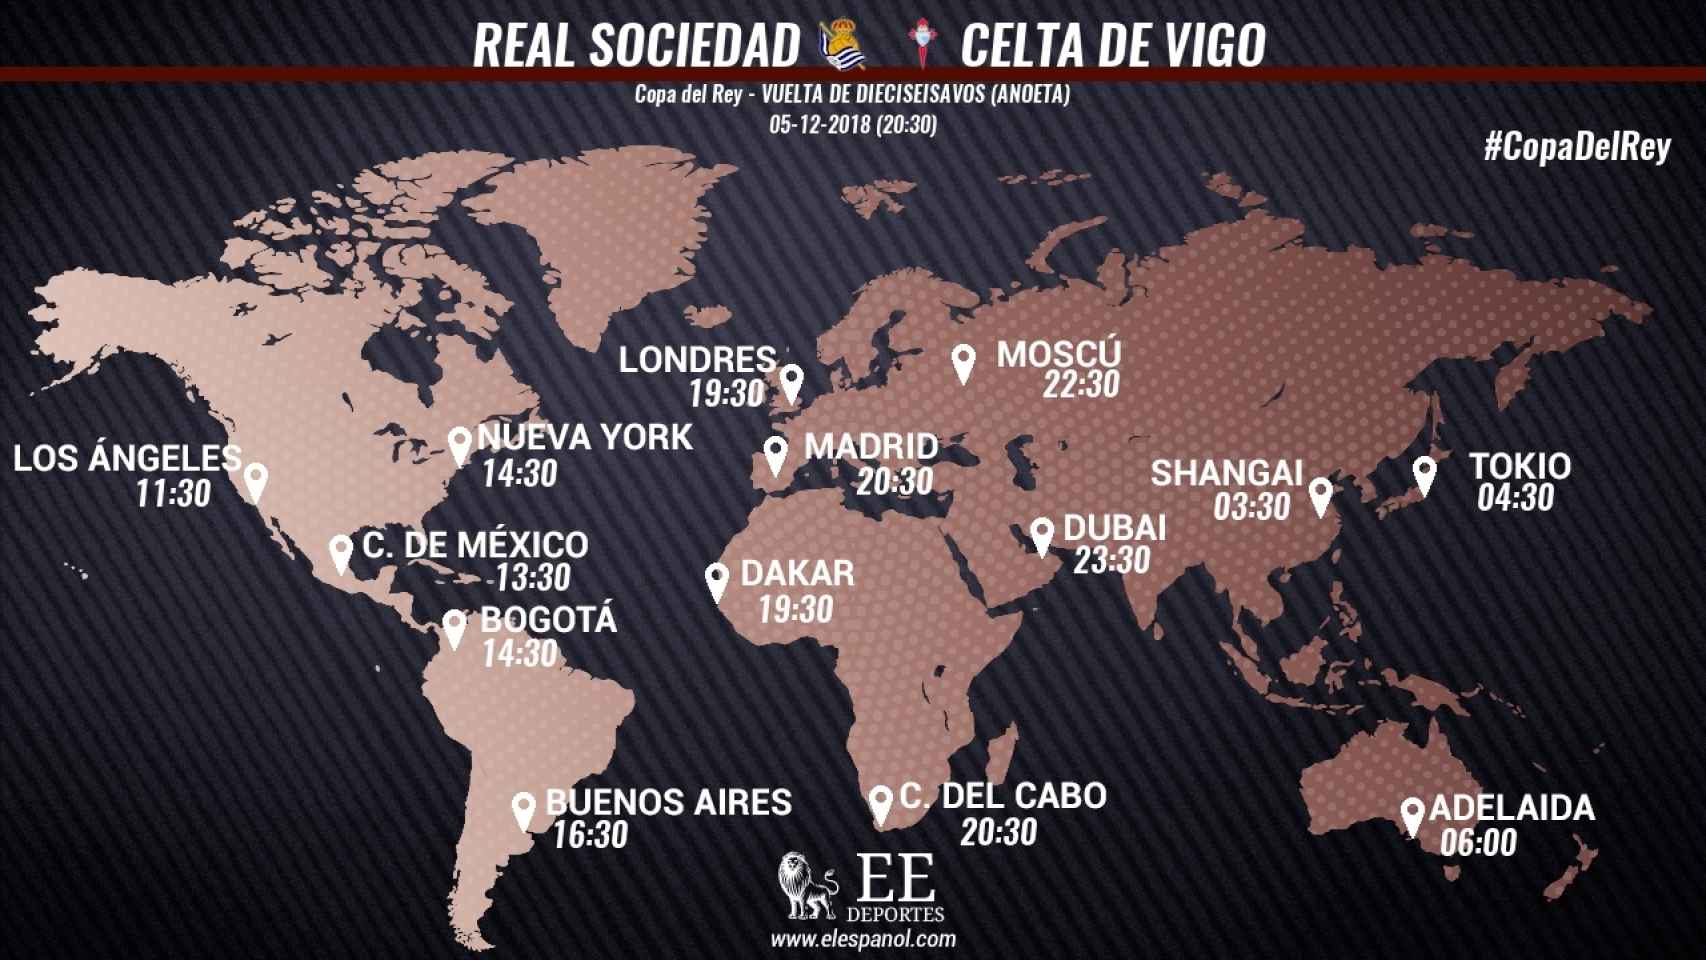 Celta de Vigo - Real Sociedad de la Copa del Rey: Horario y dónde